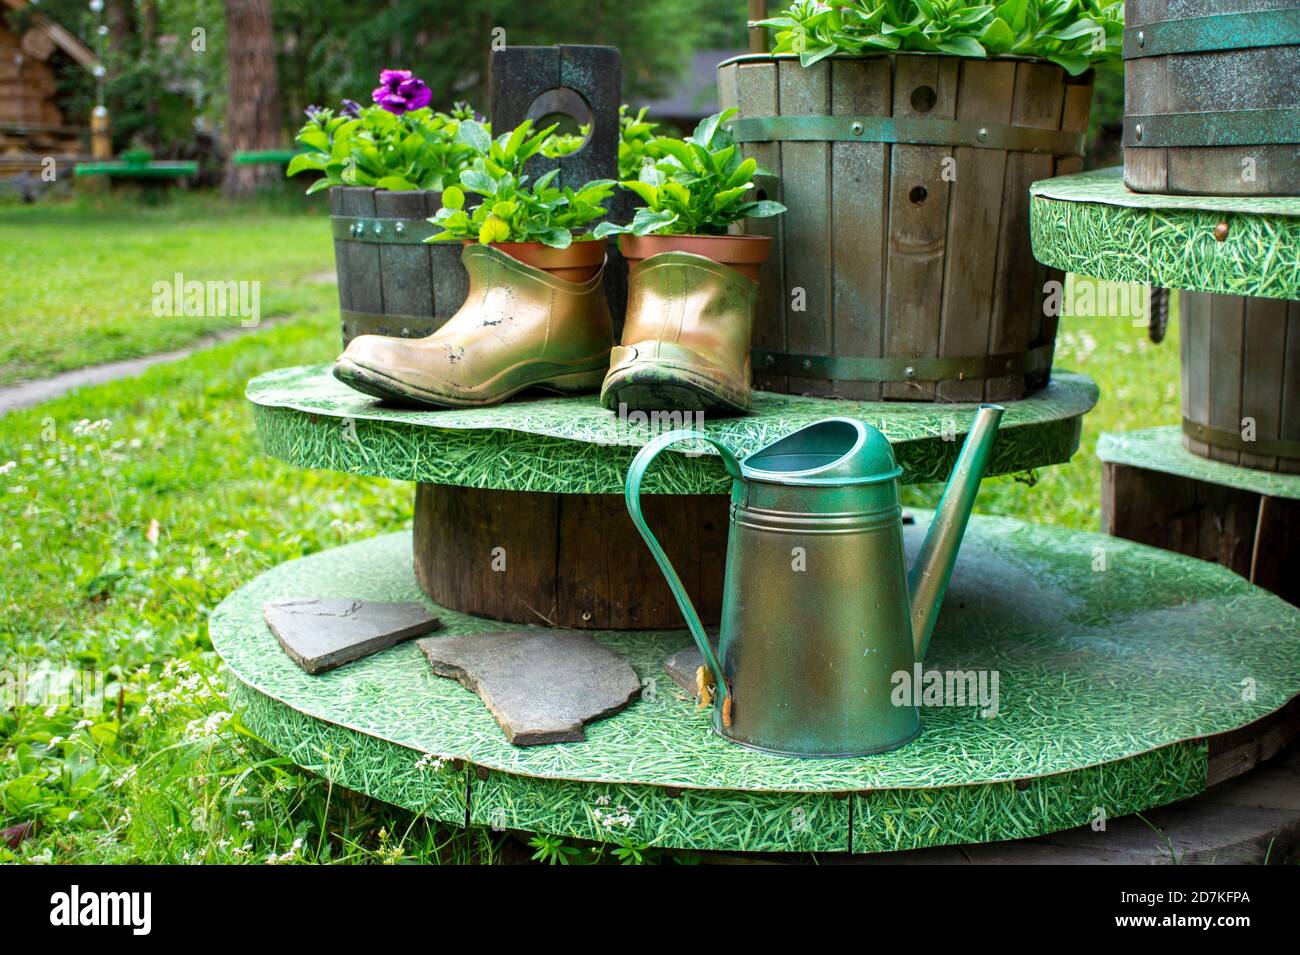 Maceta hecha a mano con botas de goma antiguas y macetas de madera y una lata de riego de metal en el jardín de verano. Concepto ecológico, diseño ecológico Foto de stock